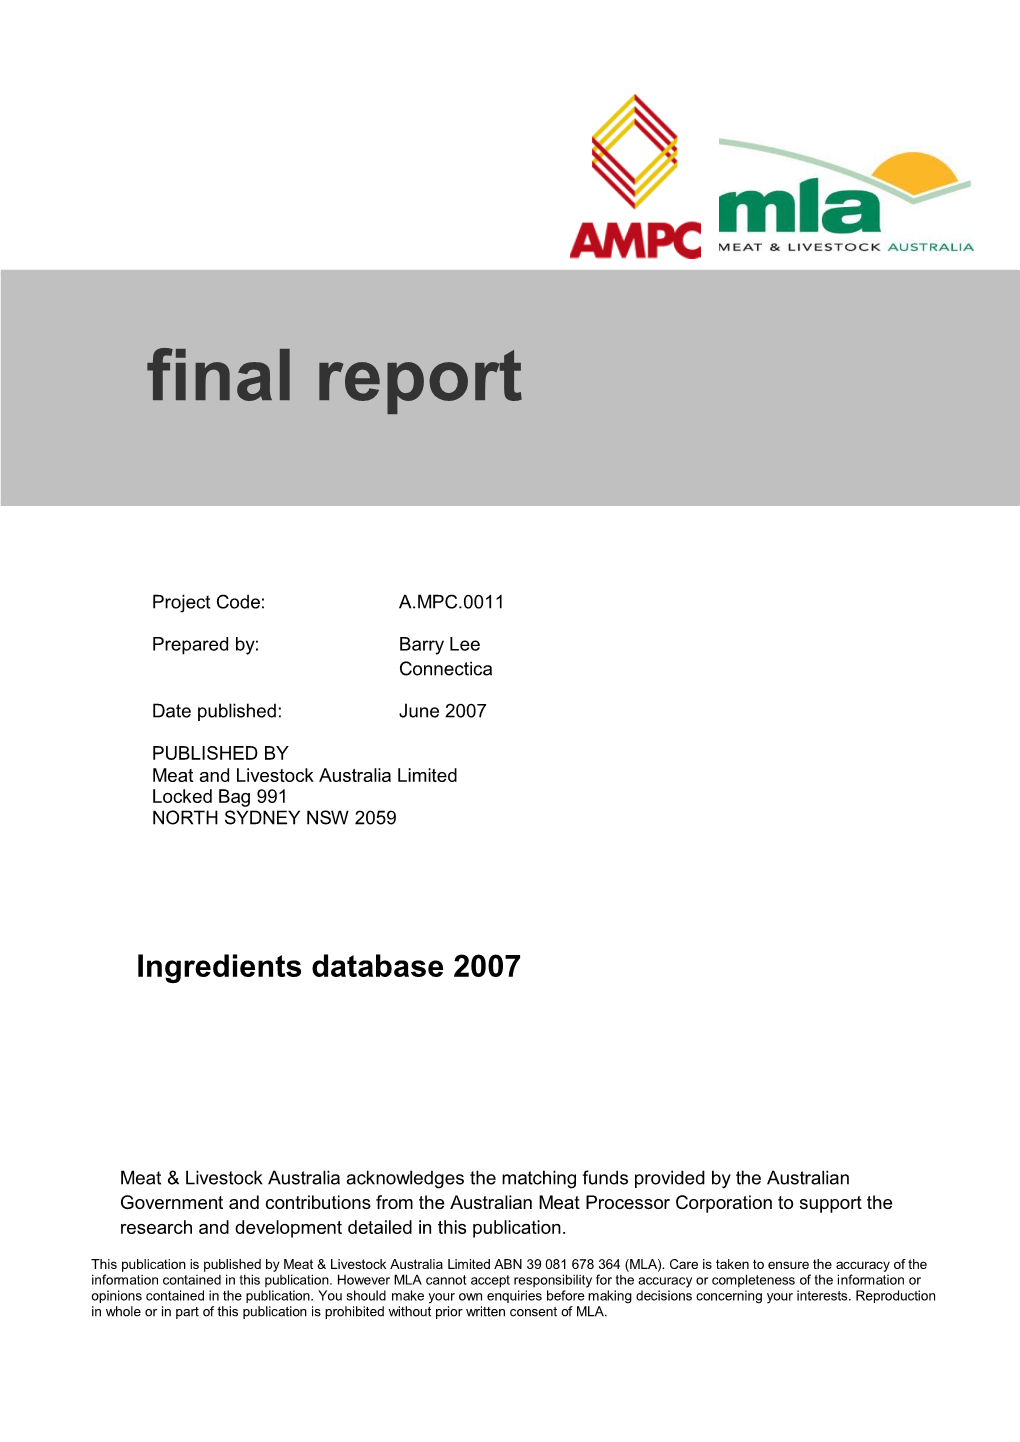 A.MPC.0011 Final Report